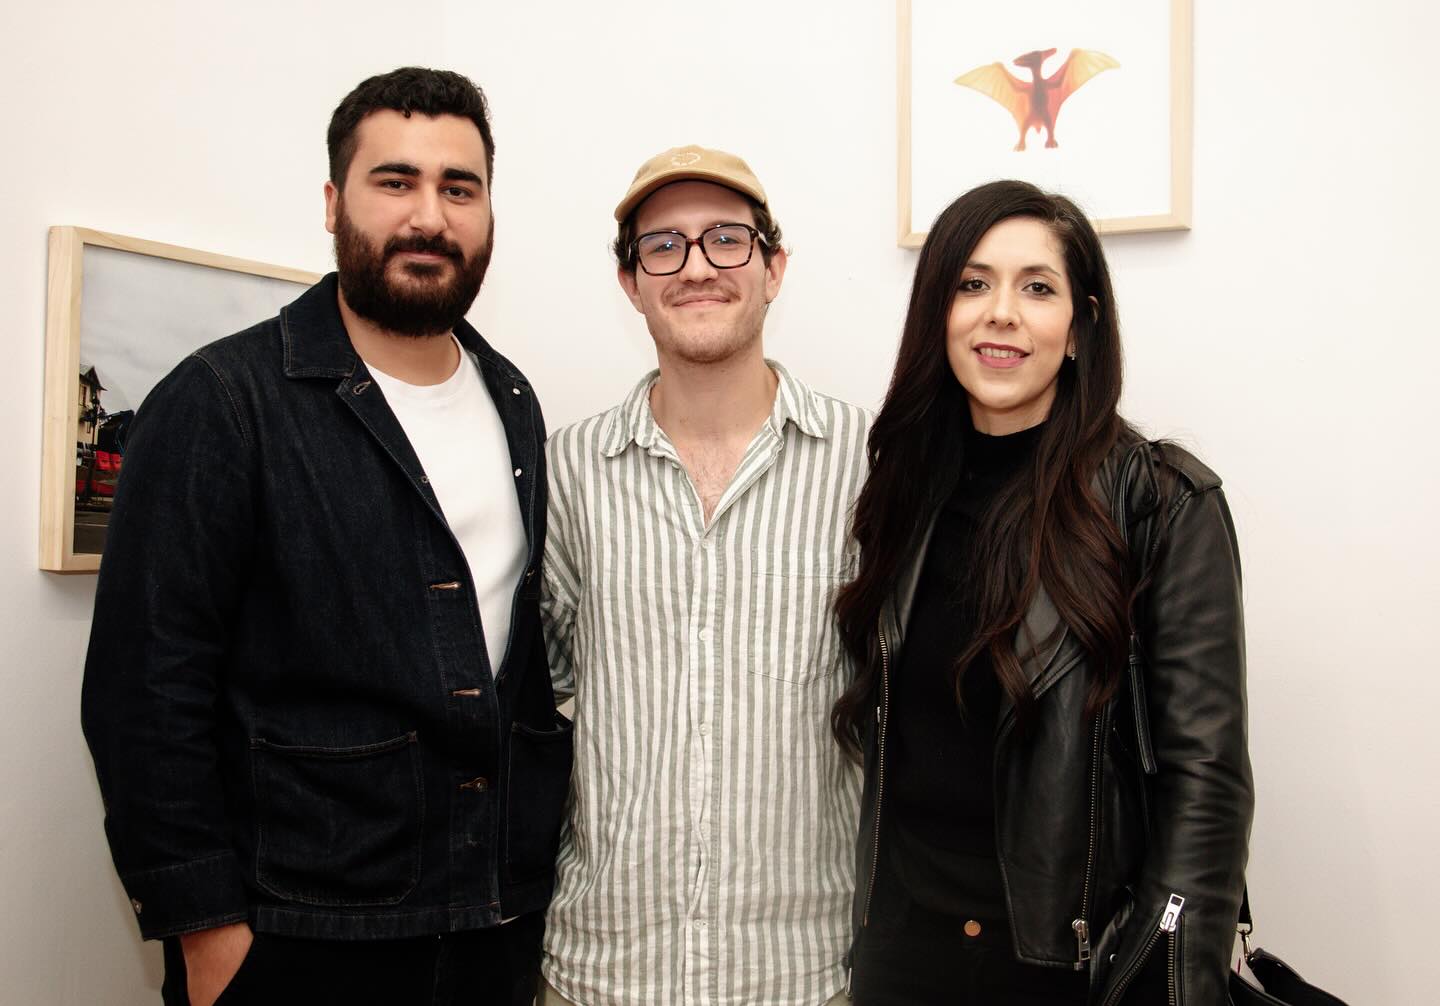 Una reunión alegre de tres personas posando juntas frente a una obra de arte en una galería de arte, destacando su disfrute colectivo de las artes.